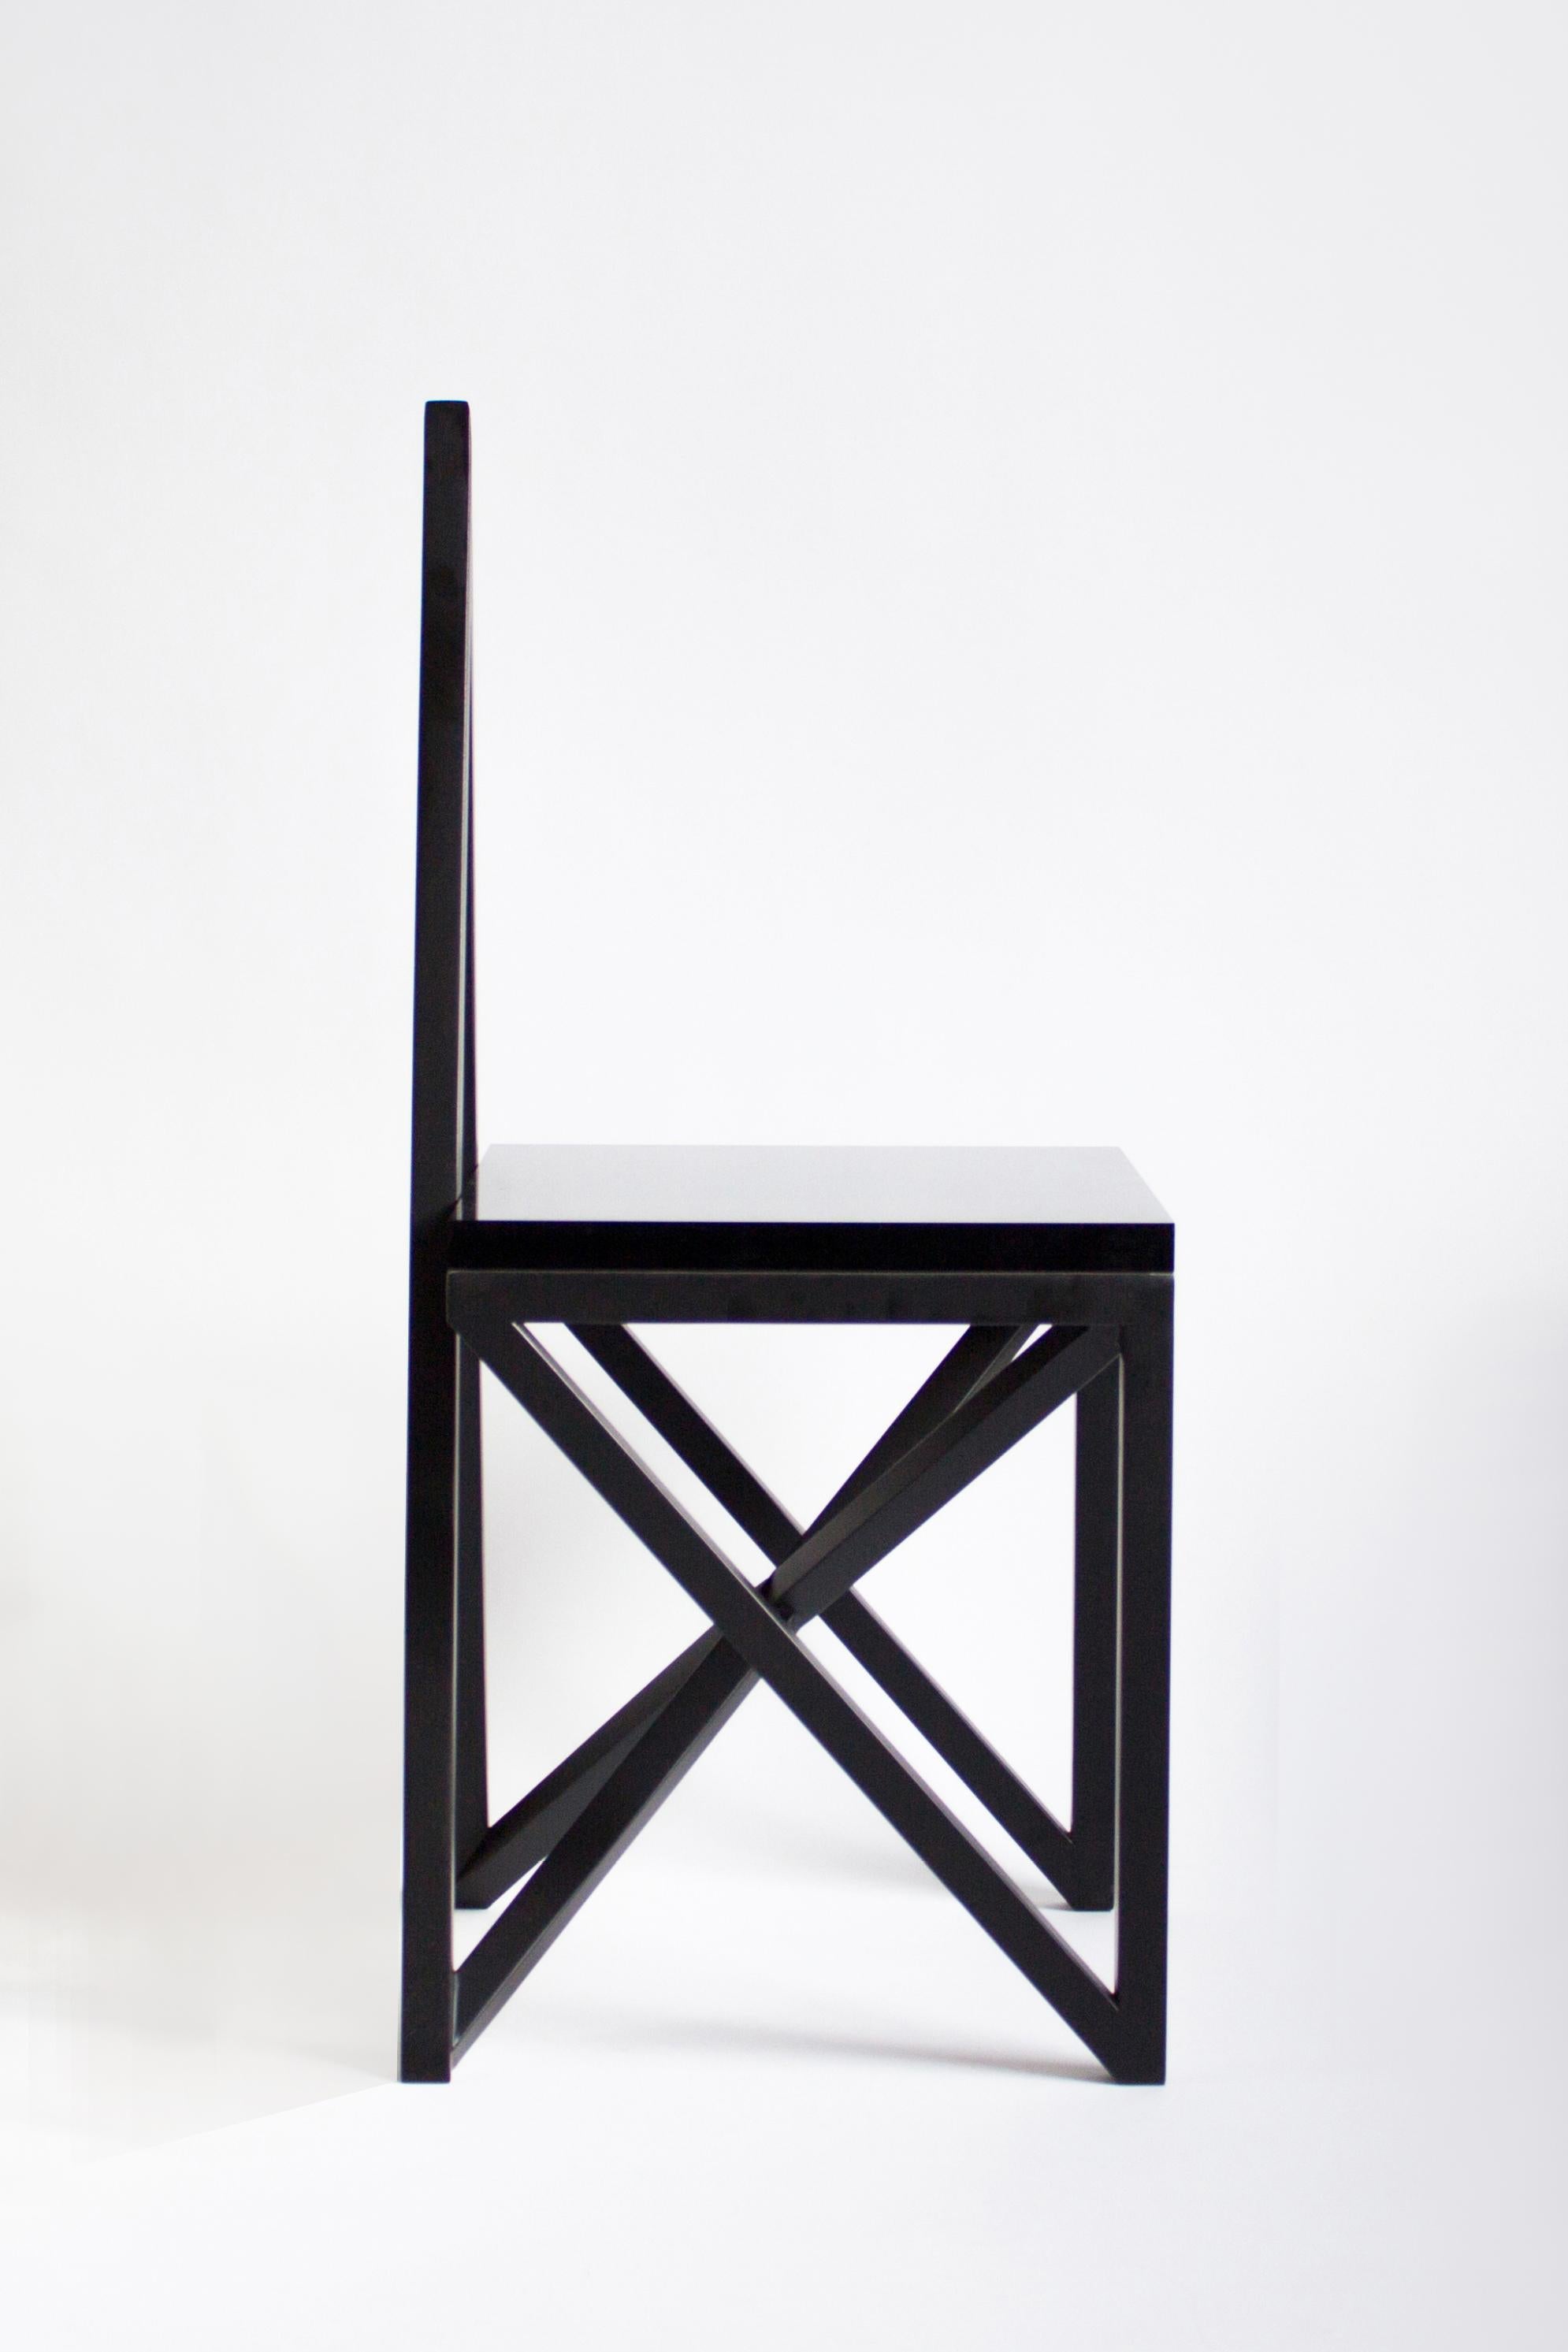 MATERIAL Lust [Amerikaner, geb. 1981,1986]
Heidnischer Stuhl, 2014
Abgebildet in pulverbeschichtetem schwarzem Stahl mit Sitz aus Lucit. 
Maße: 33